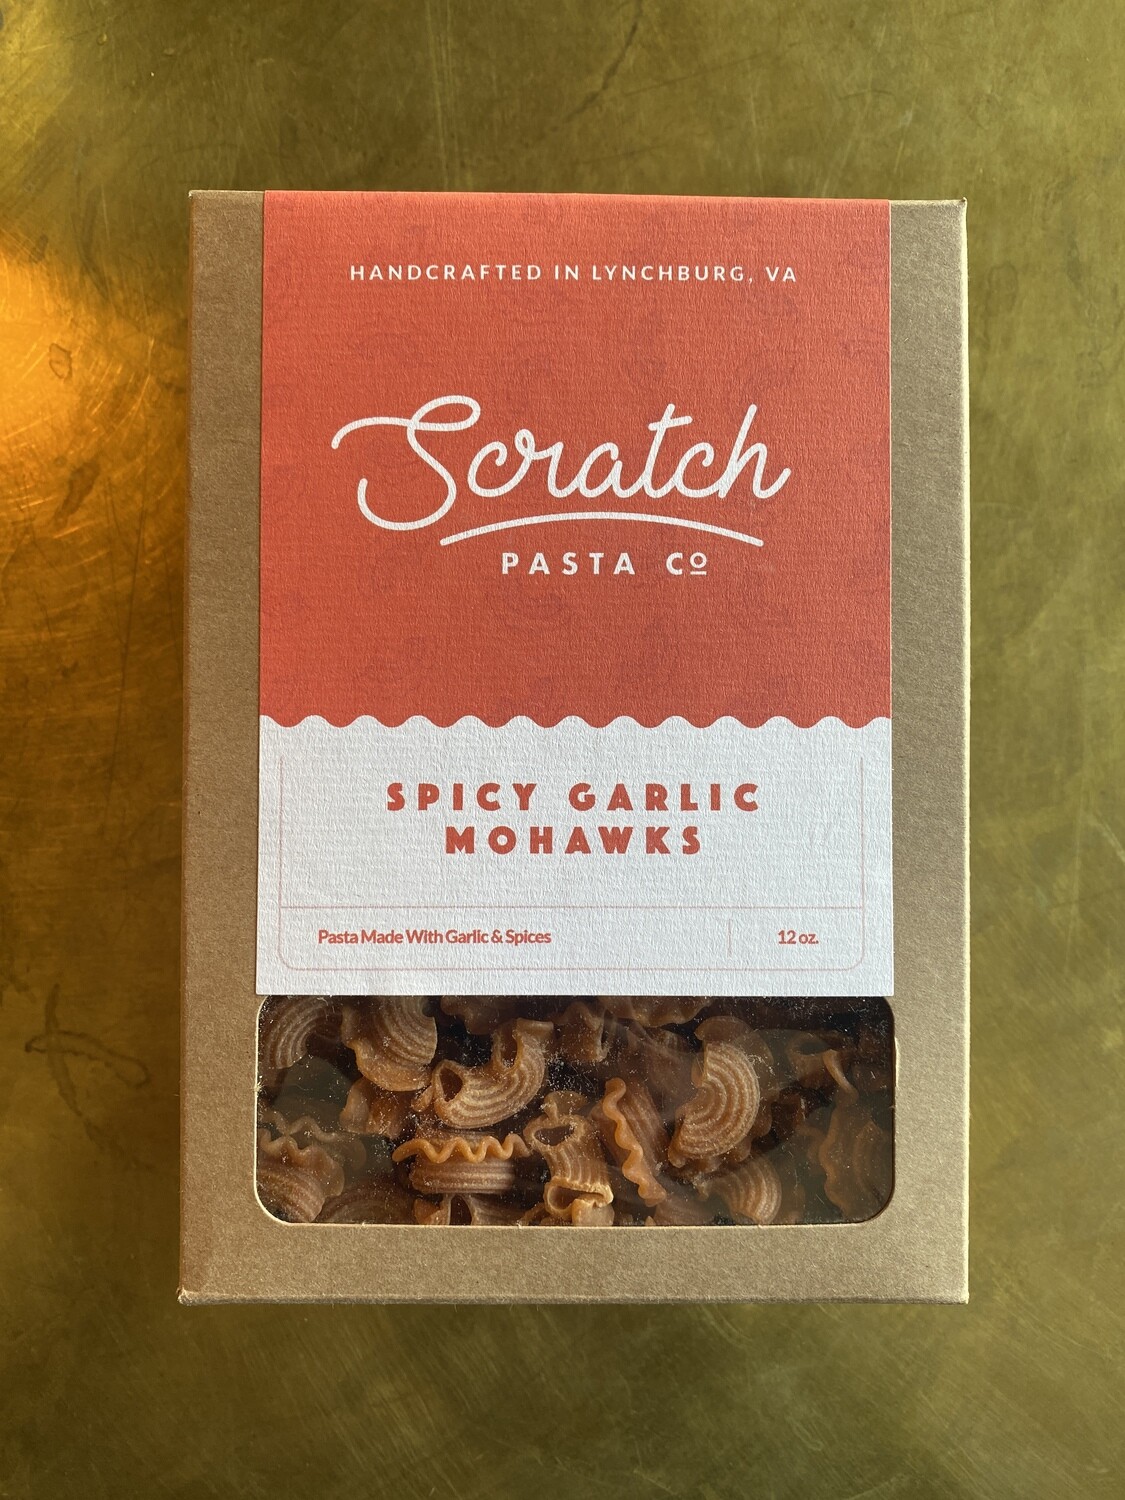 Scratch Pasta, Spicy Garlic Mohawks